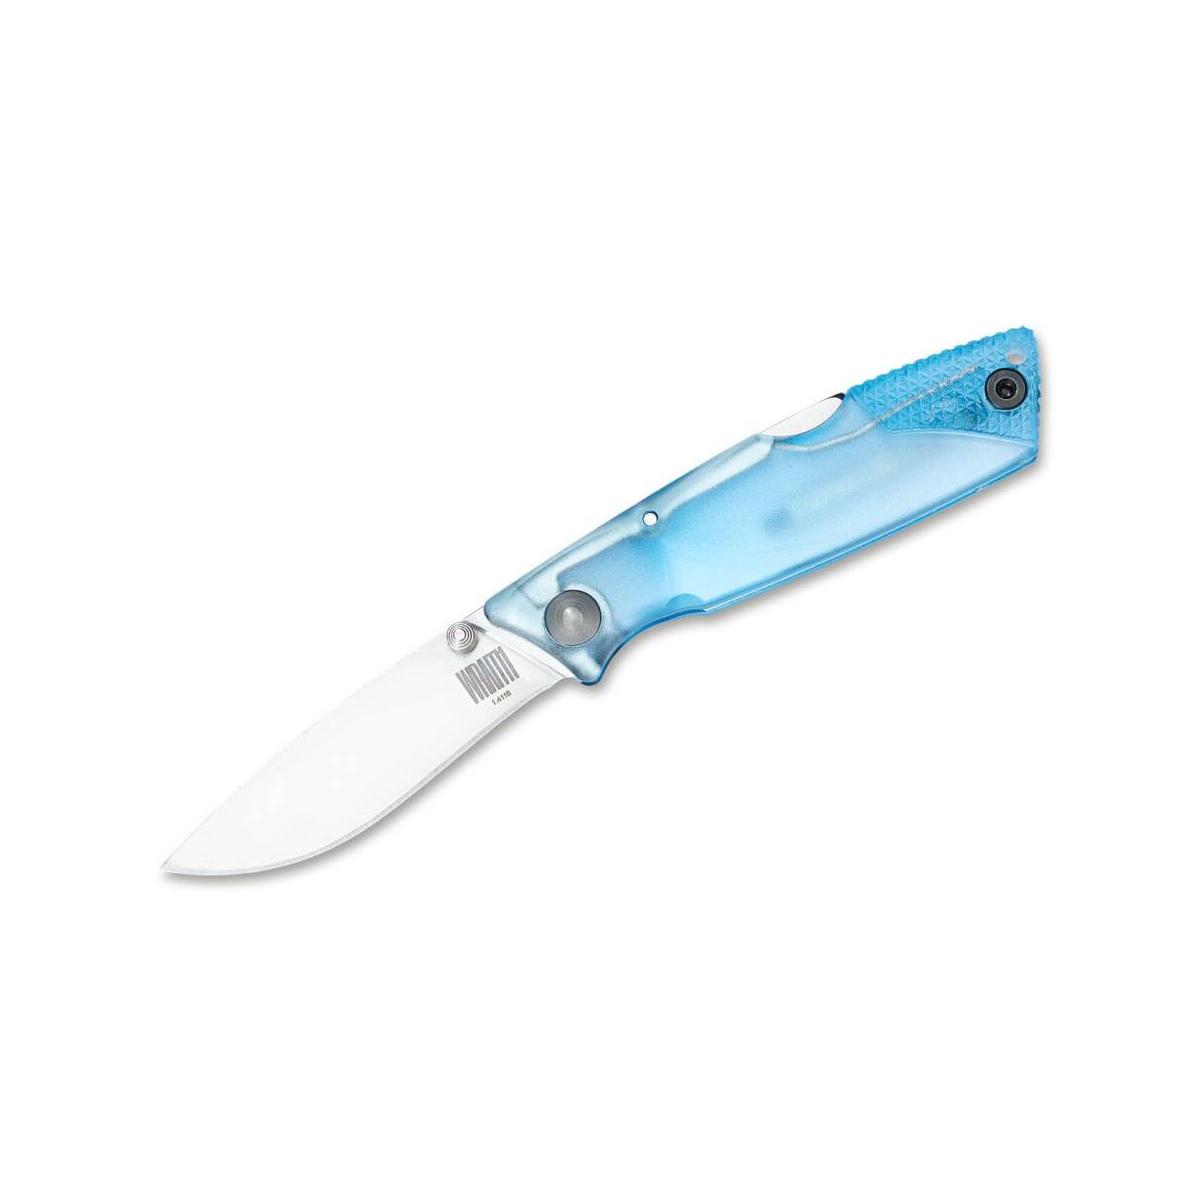 Ontario nóż składany Wraith niebieski.